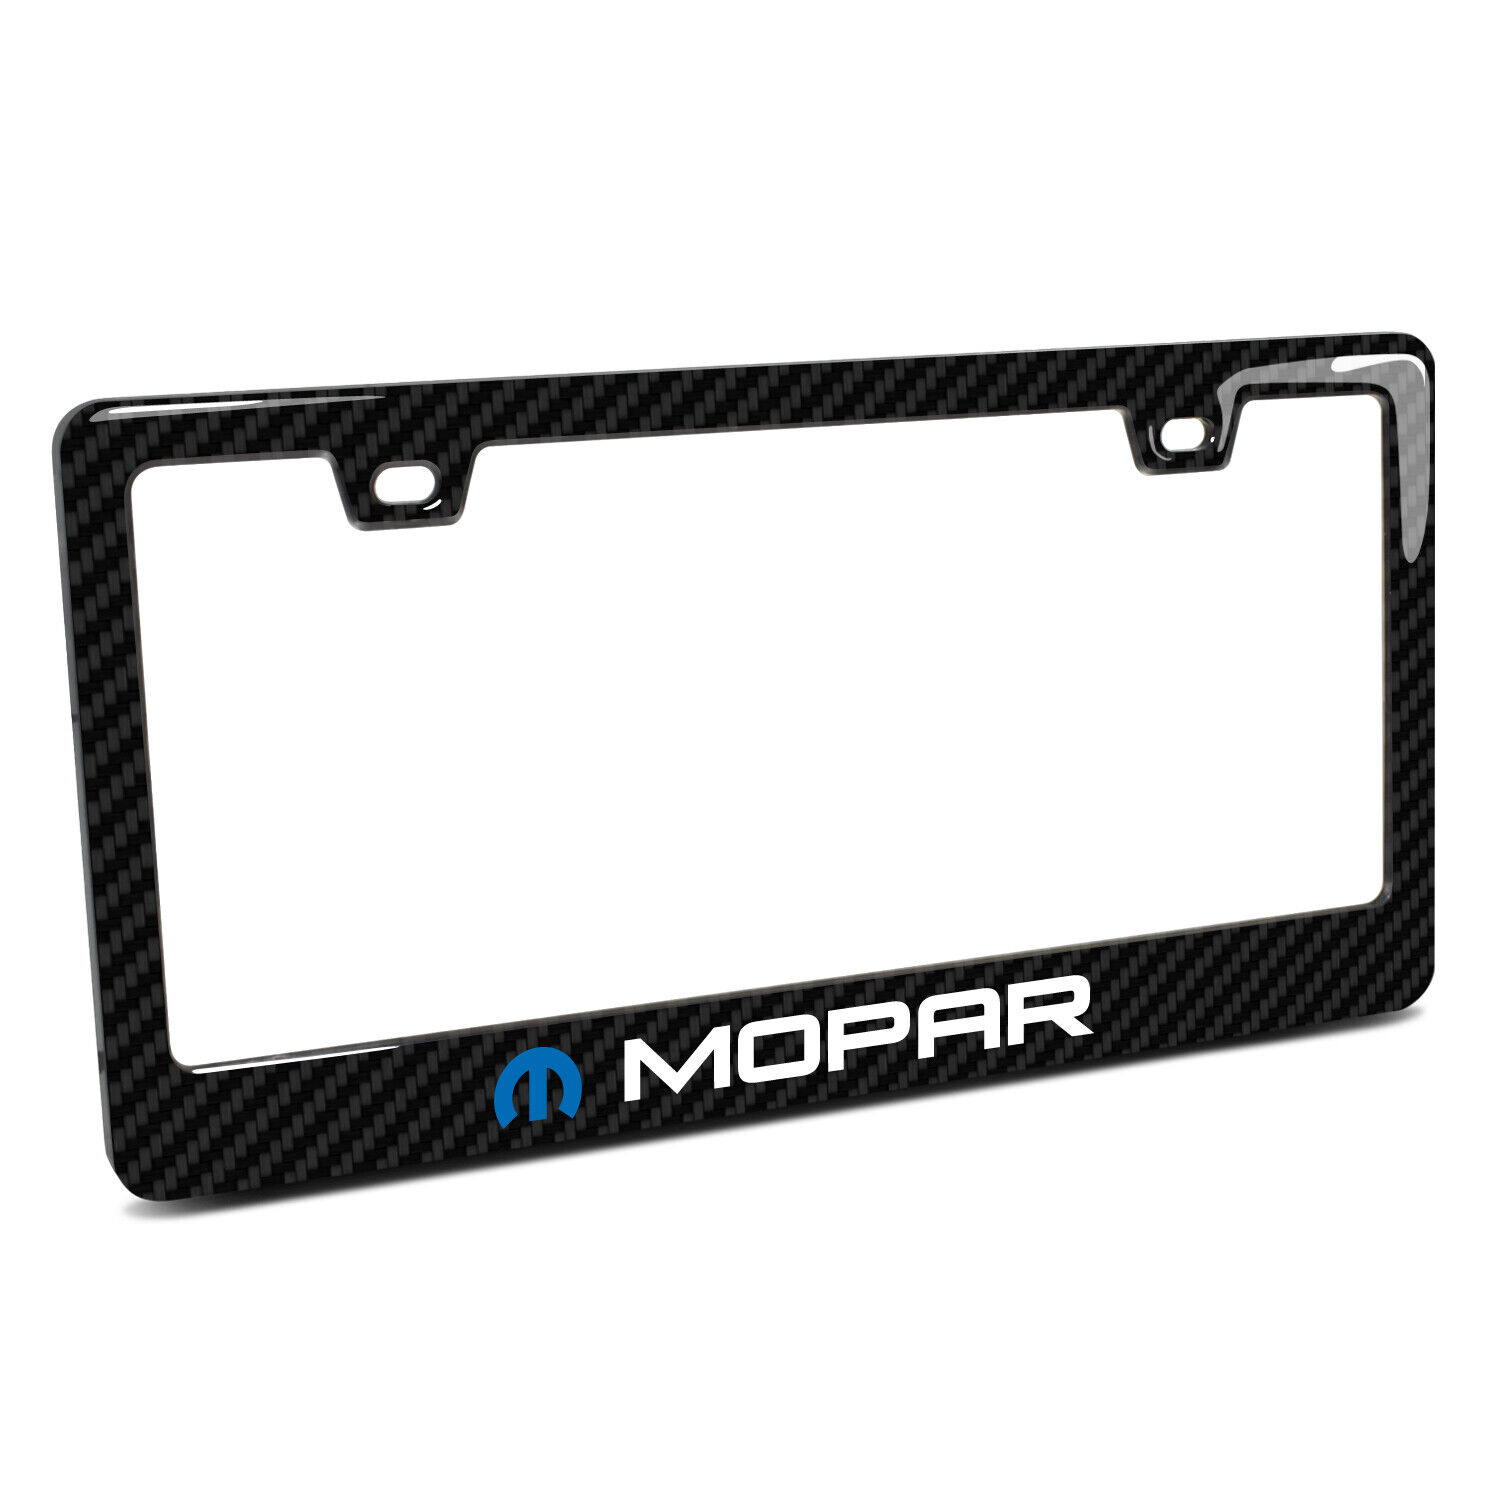 Mopar Black Real 3K Carbon Fiber Finish ABS Plastic License Plate Frame